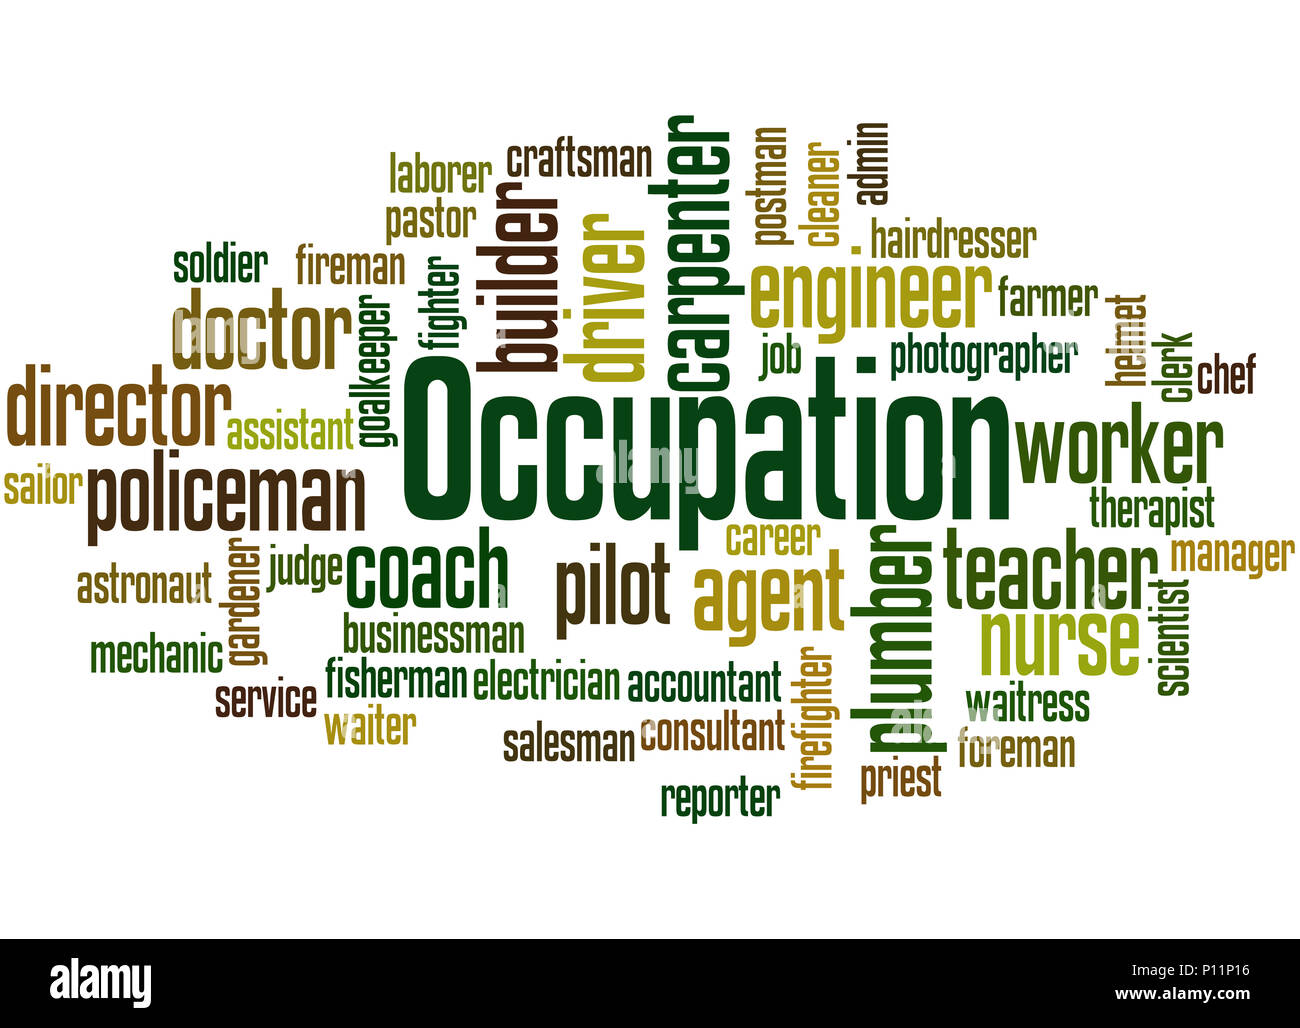 Berufe, verschiedene Jobs, Karriere Auswahl, Beruf word cloud Konzept auf weißem Hintergrund. Stockfoto